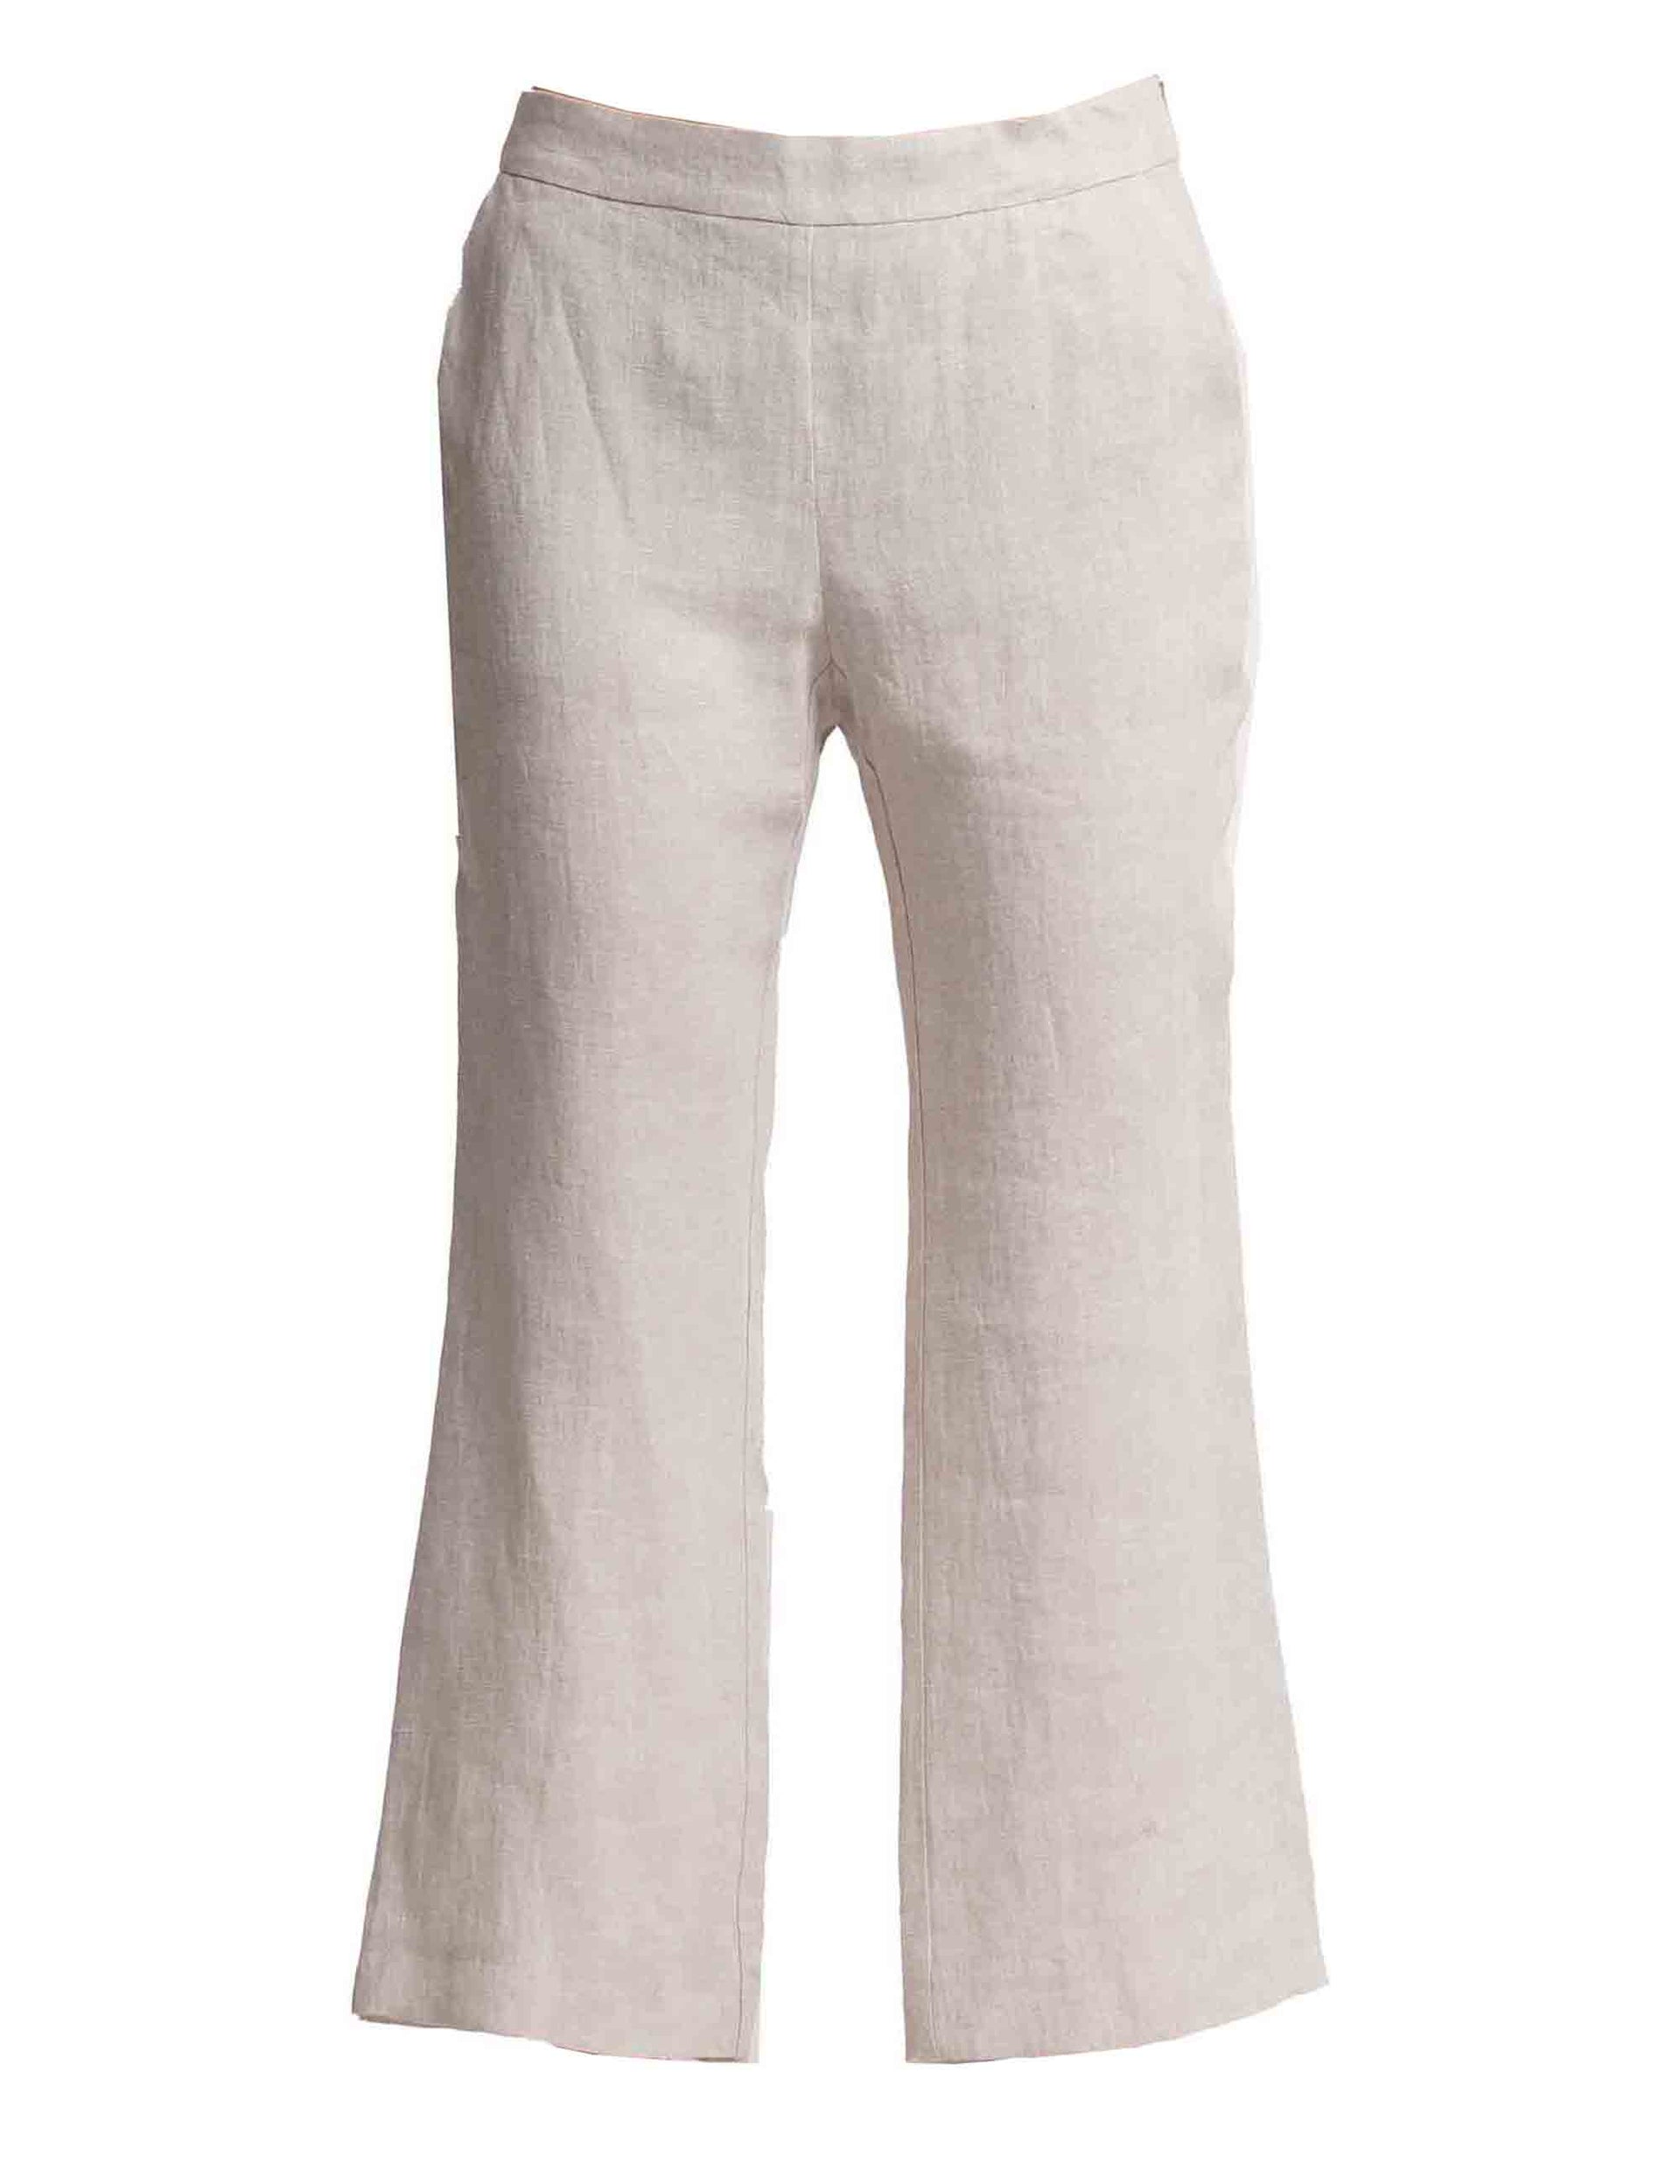 Délavé women's trousers in pure beige linen